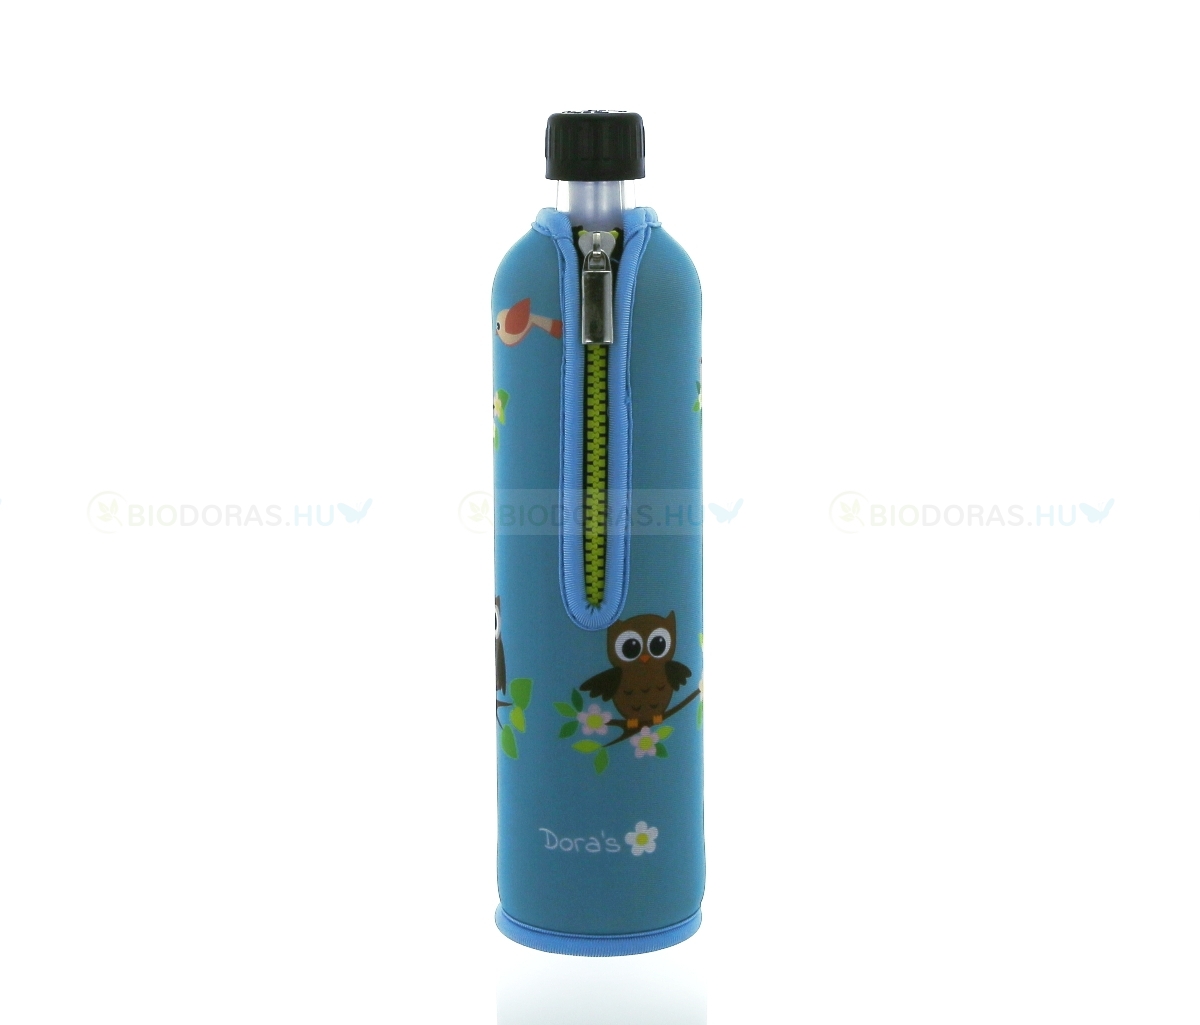 DORAS Üvegkulacs (üvegpalack) világoskék színű, bagoly mintás neoprén huzattal - 500 ml